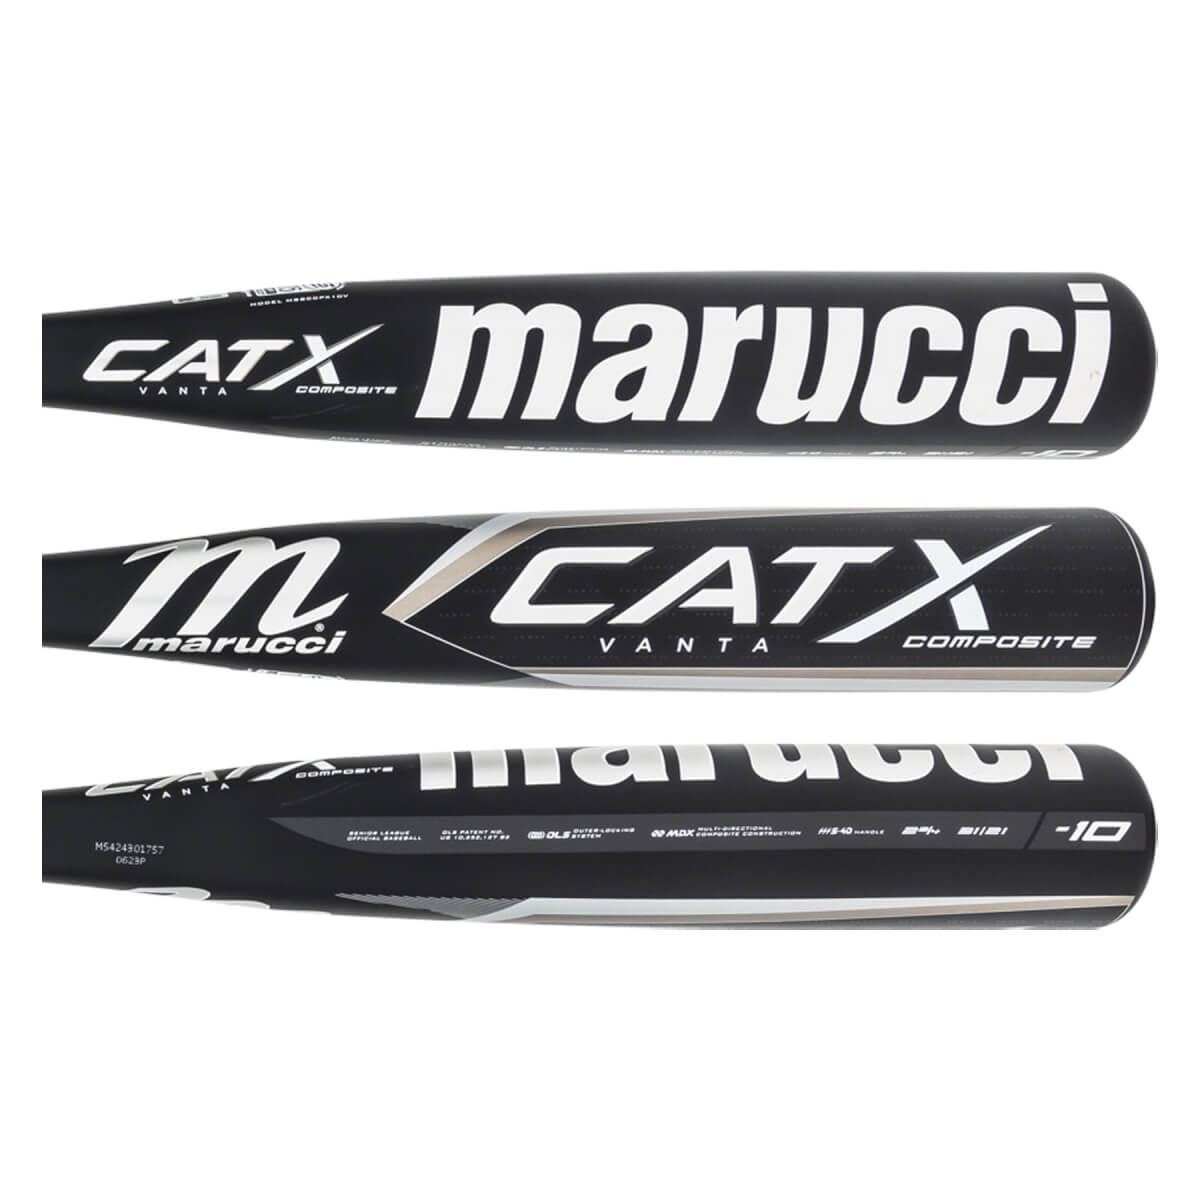 Marucci CATX Vanta Composite -10 USSSA Baseball Bat